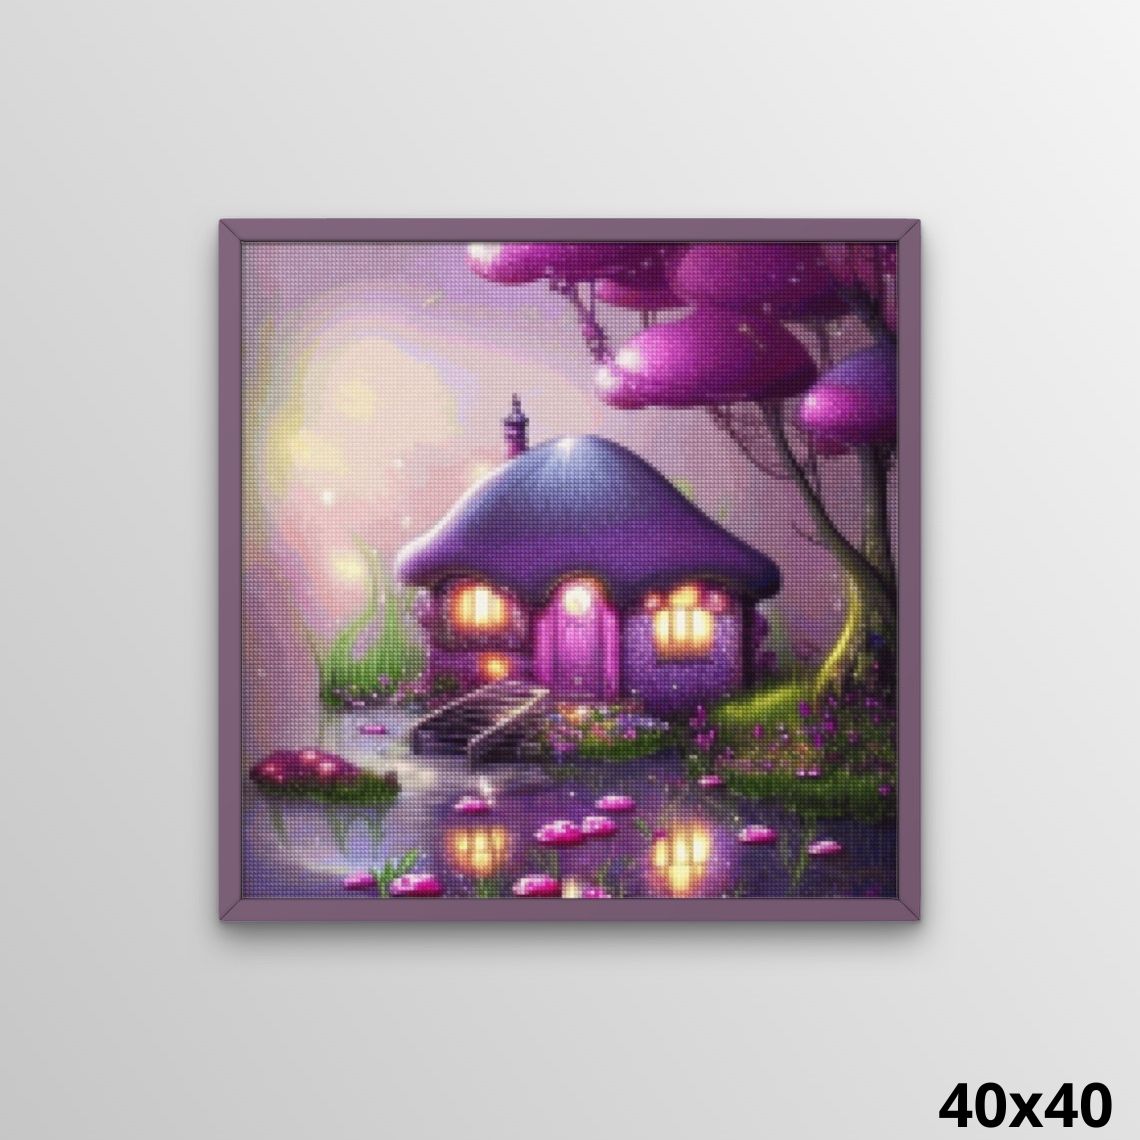 Fairy Hut in Mushroom Land - Diamond Painting Kit